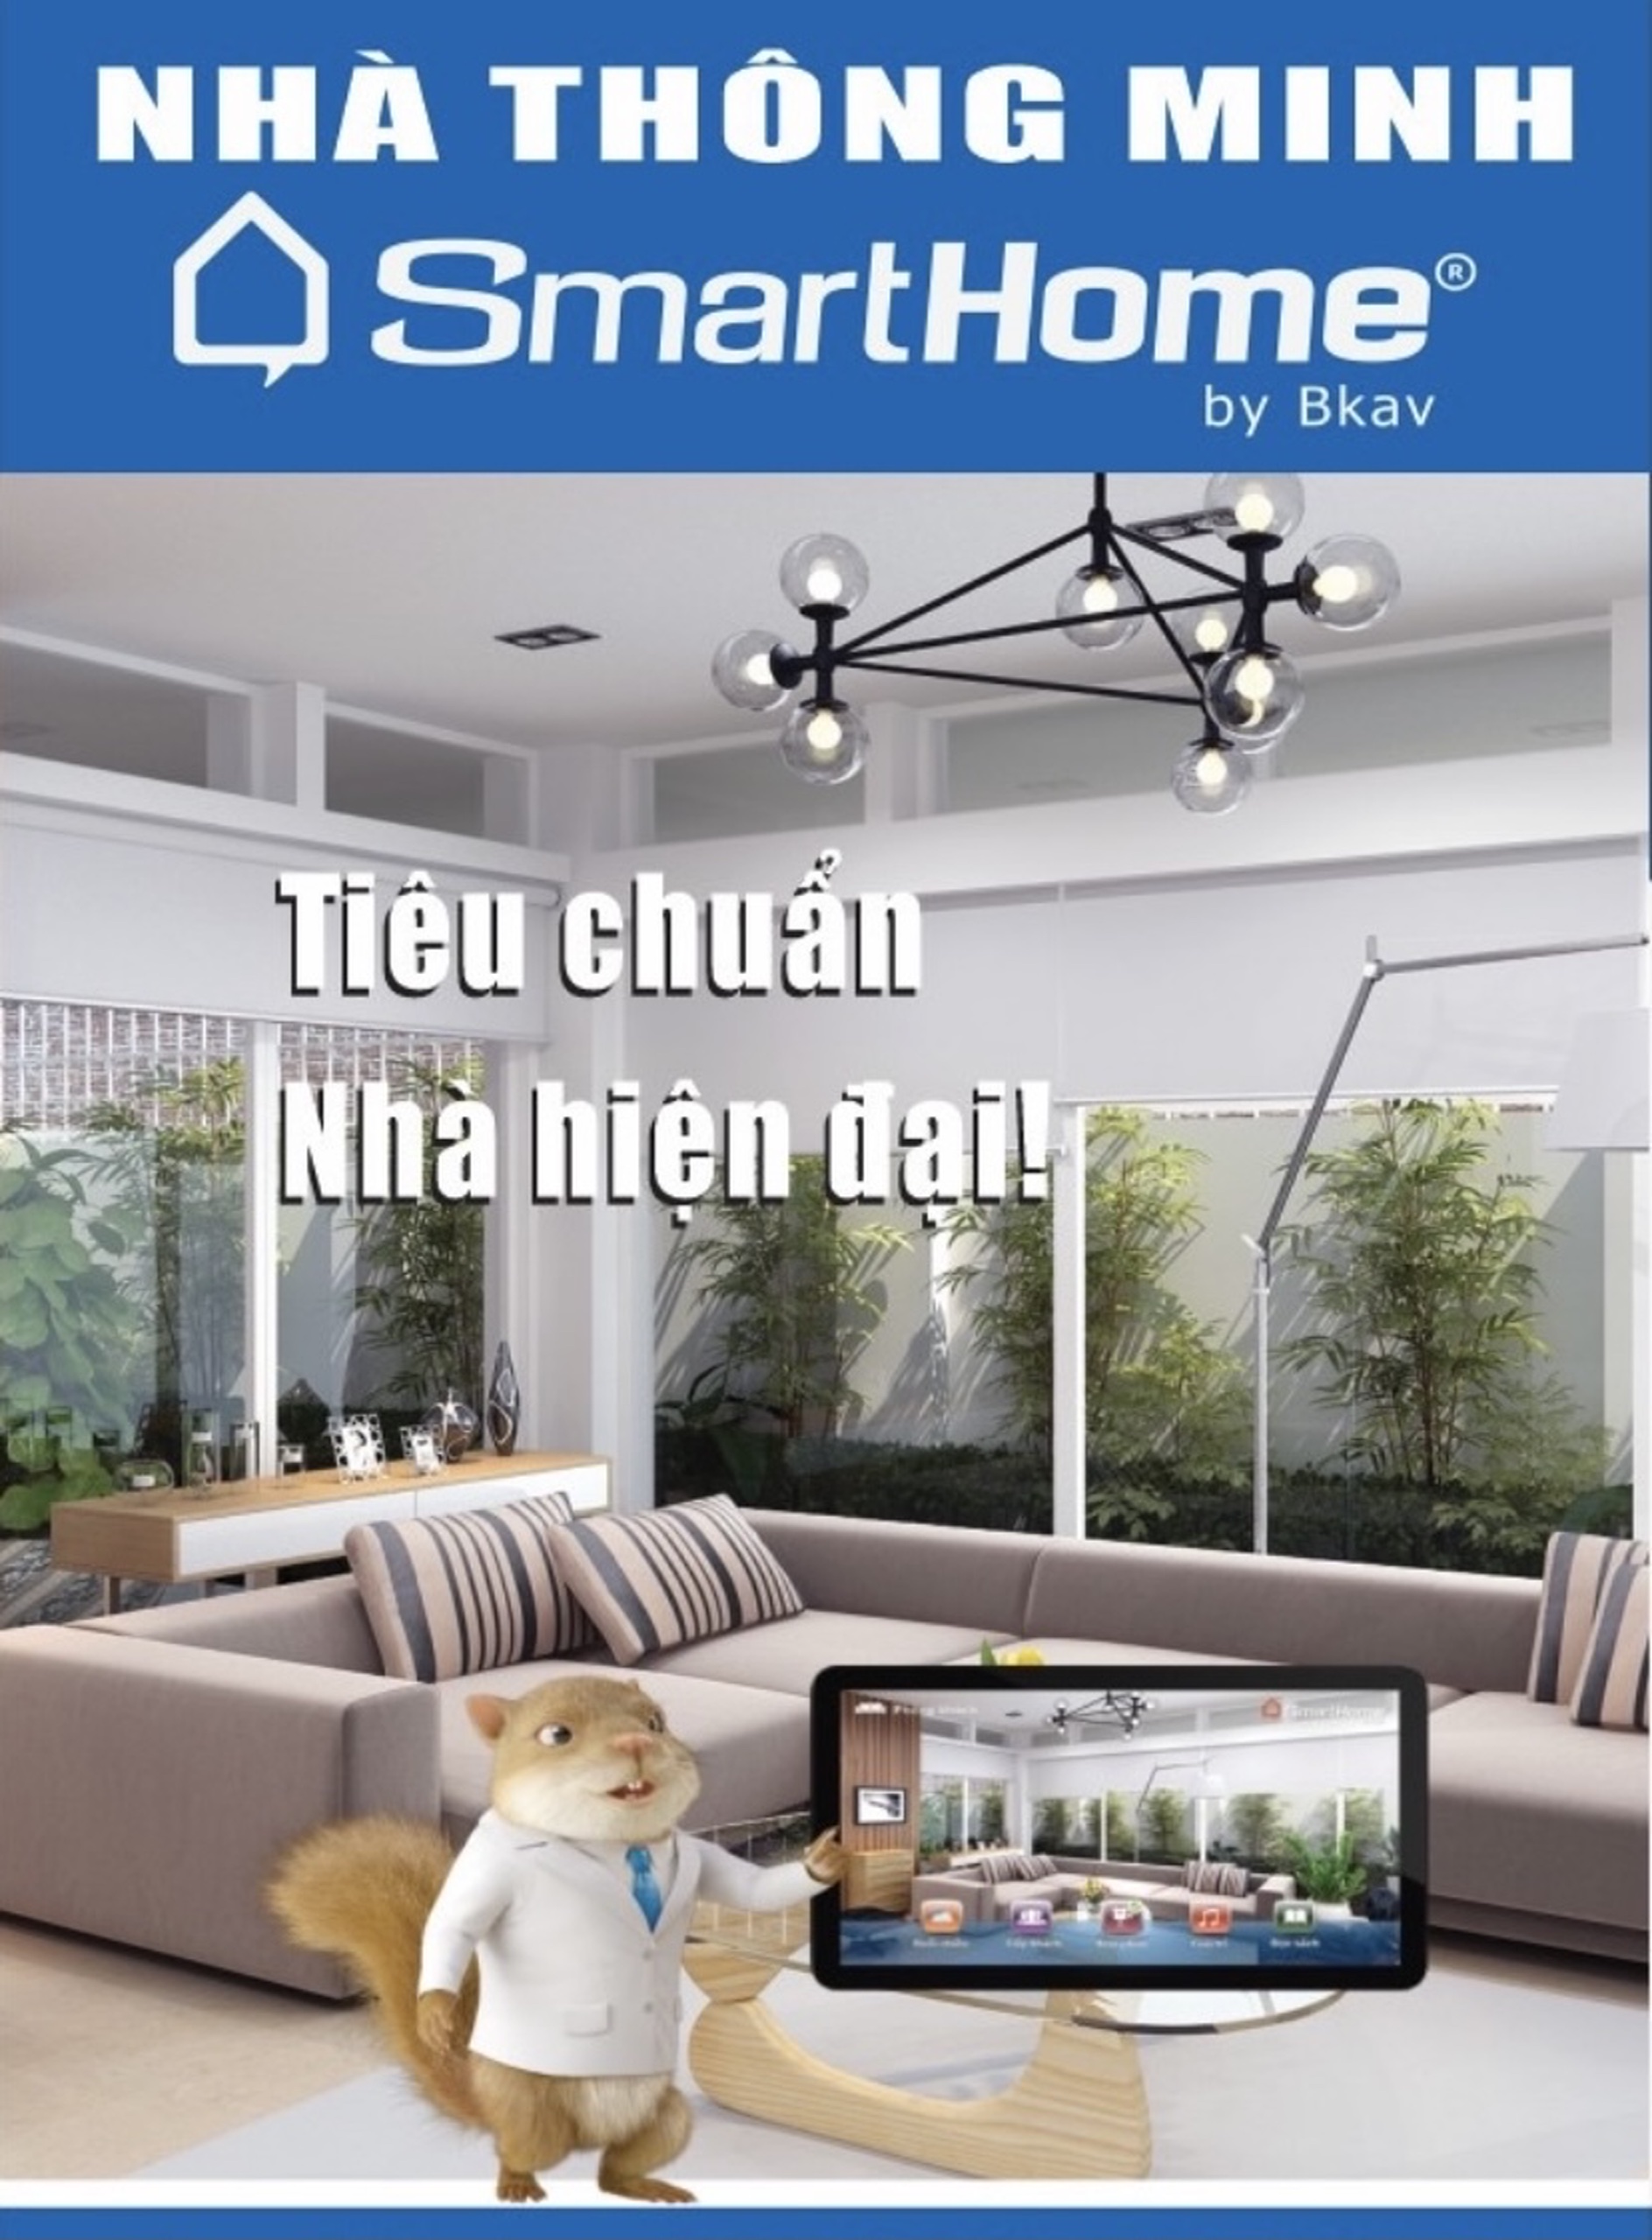 Nhà Thông Minh Bkav SmartHome Luxury